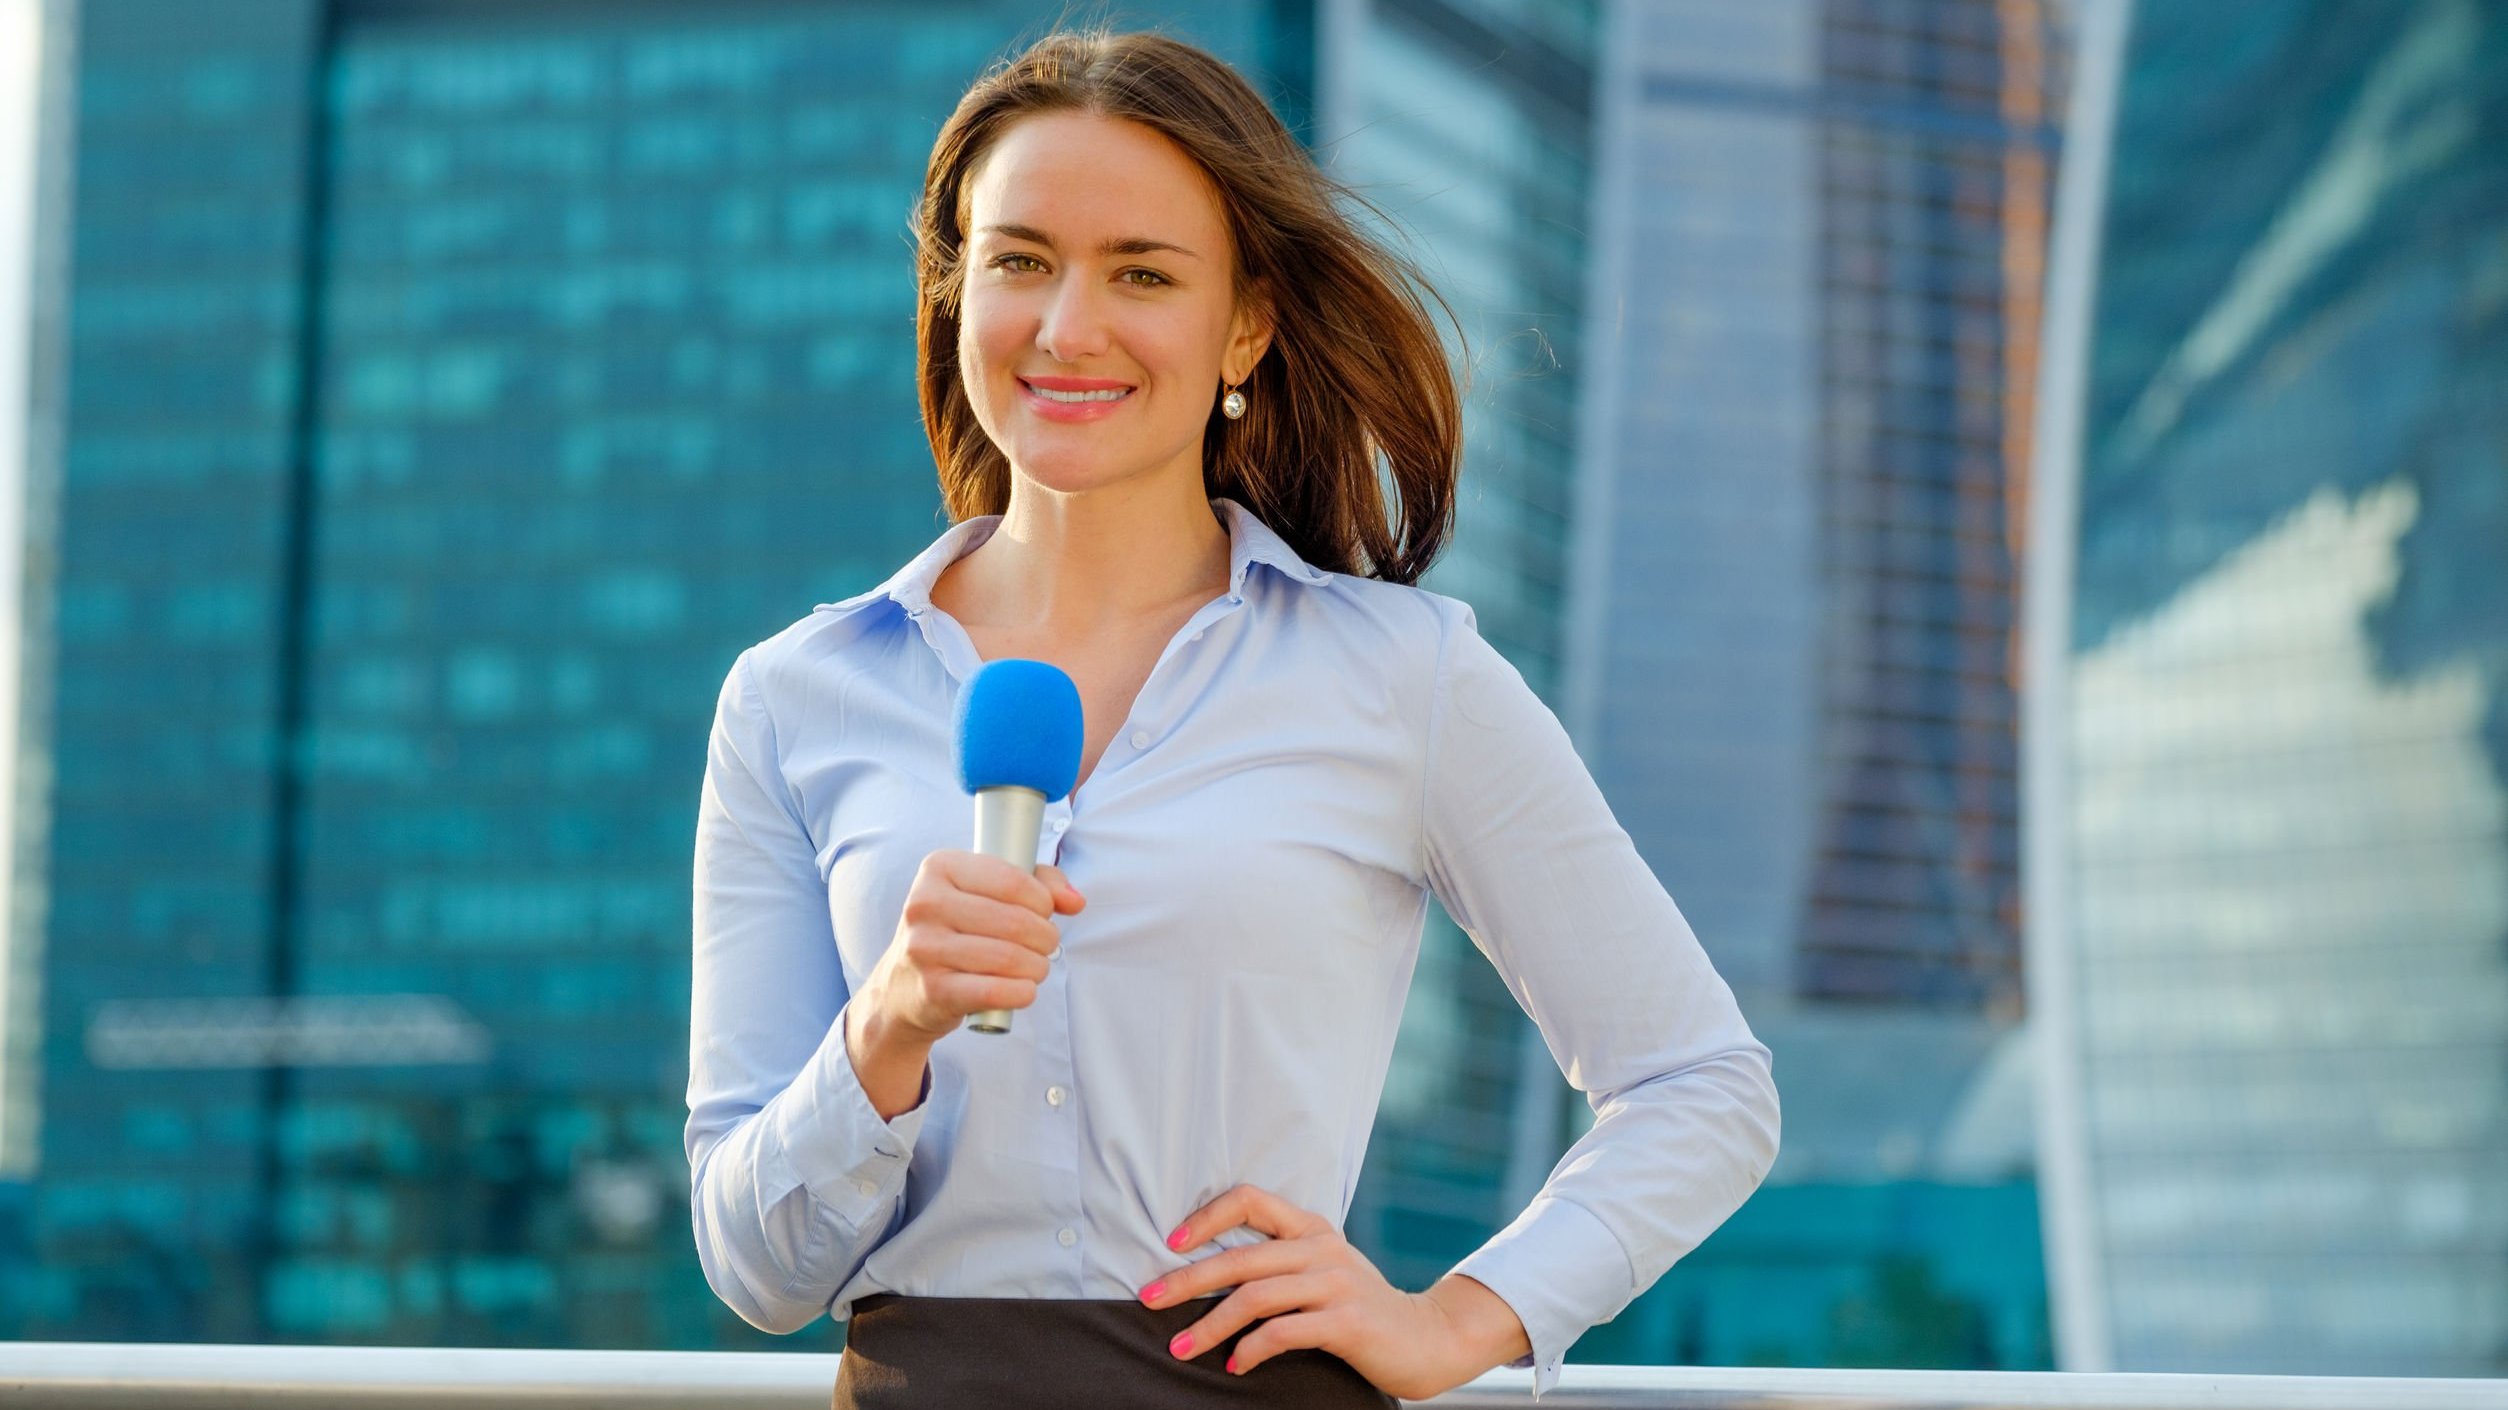 Mulher com camisa social azul, mão esquerda apoiada na cintura e segurando um microfone com a mão direita. Ao fundo dela, vemos prédios comerciais com fachadas espelhadas.